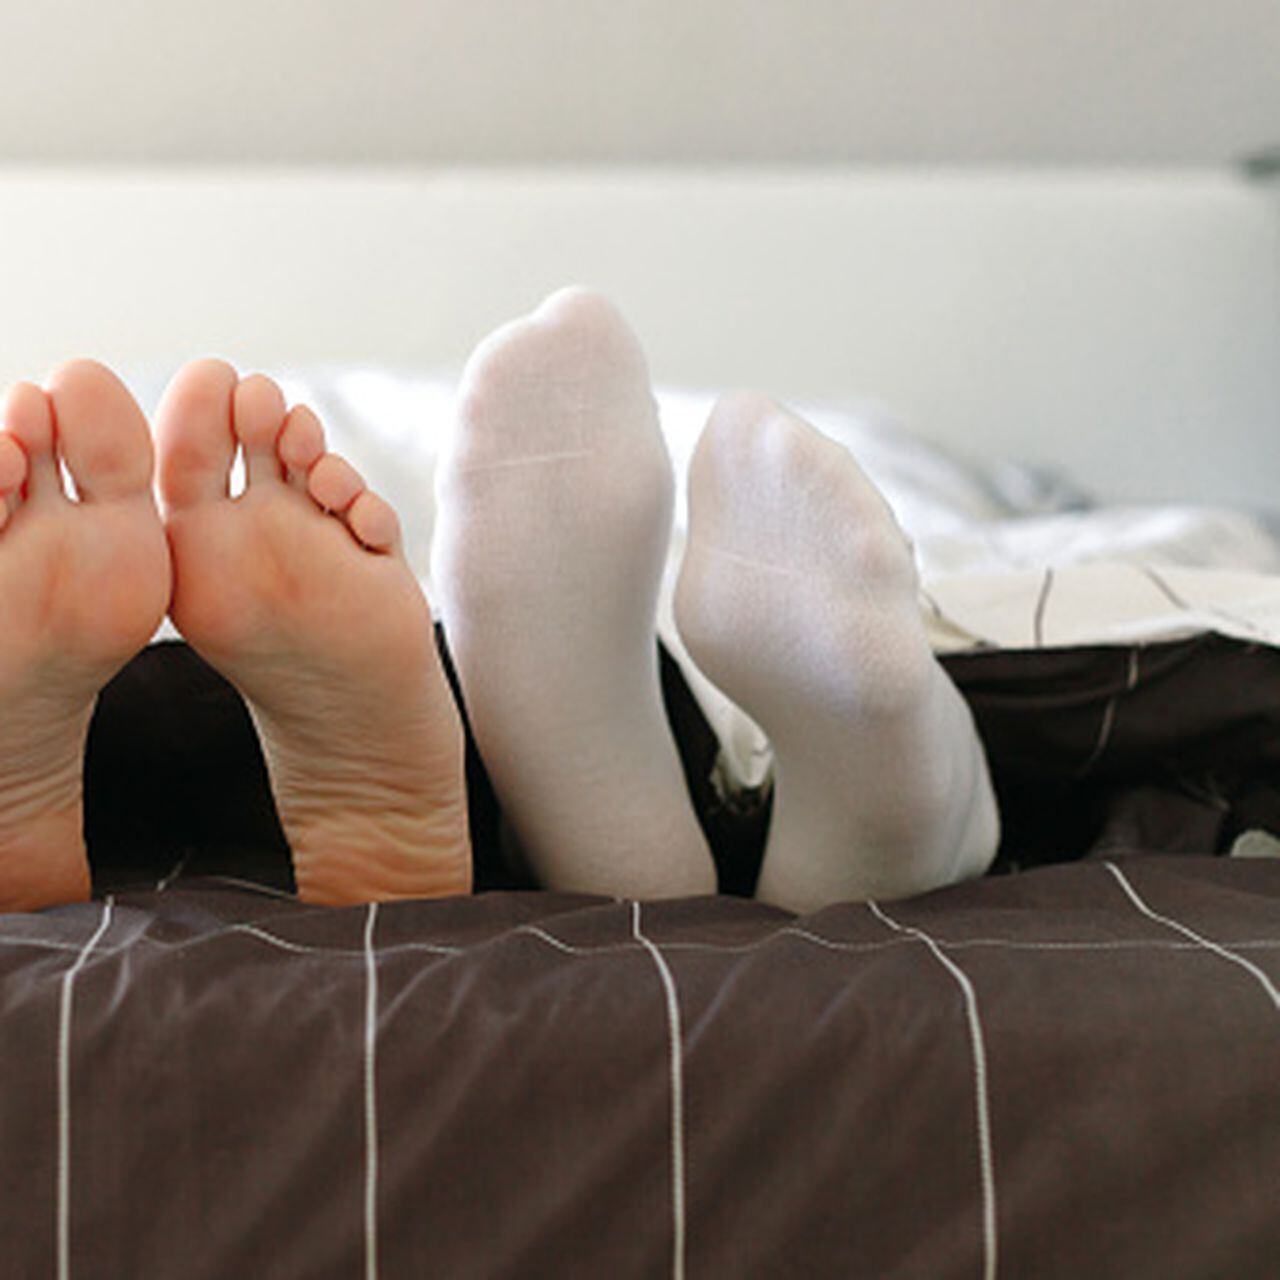 Es mejor dormir con o sin calcetines? - BBC News Mundo